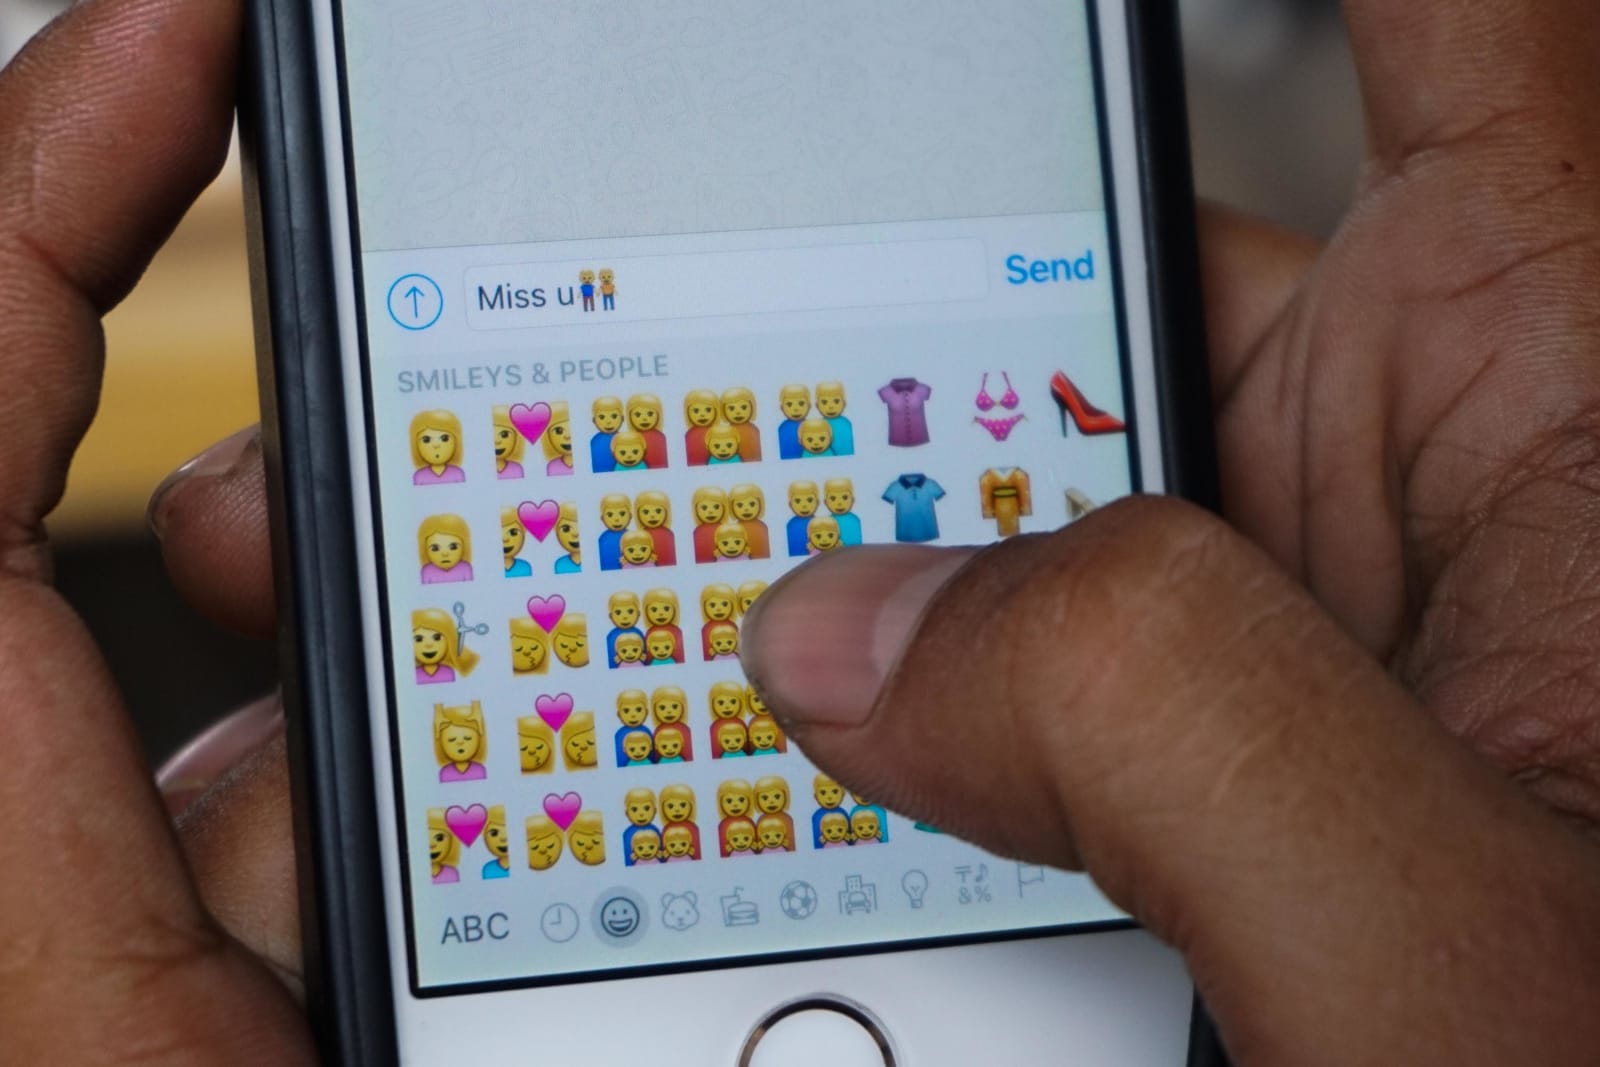 Indonesia Bans 'LGBT' Emoji On Messaging Apps